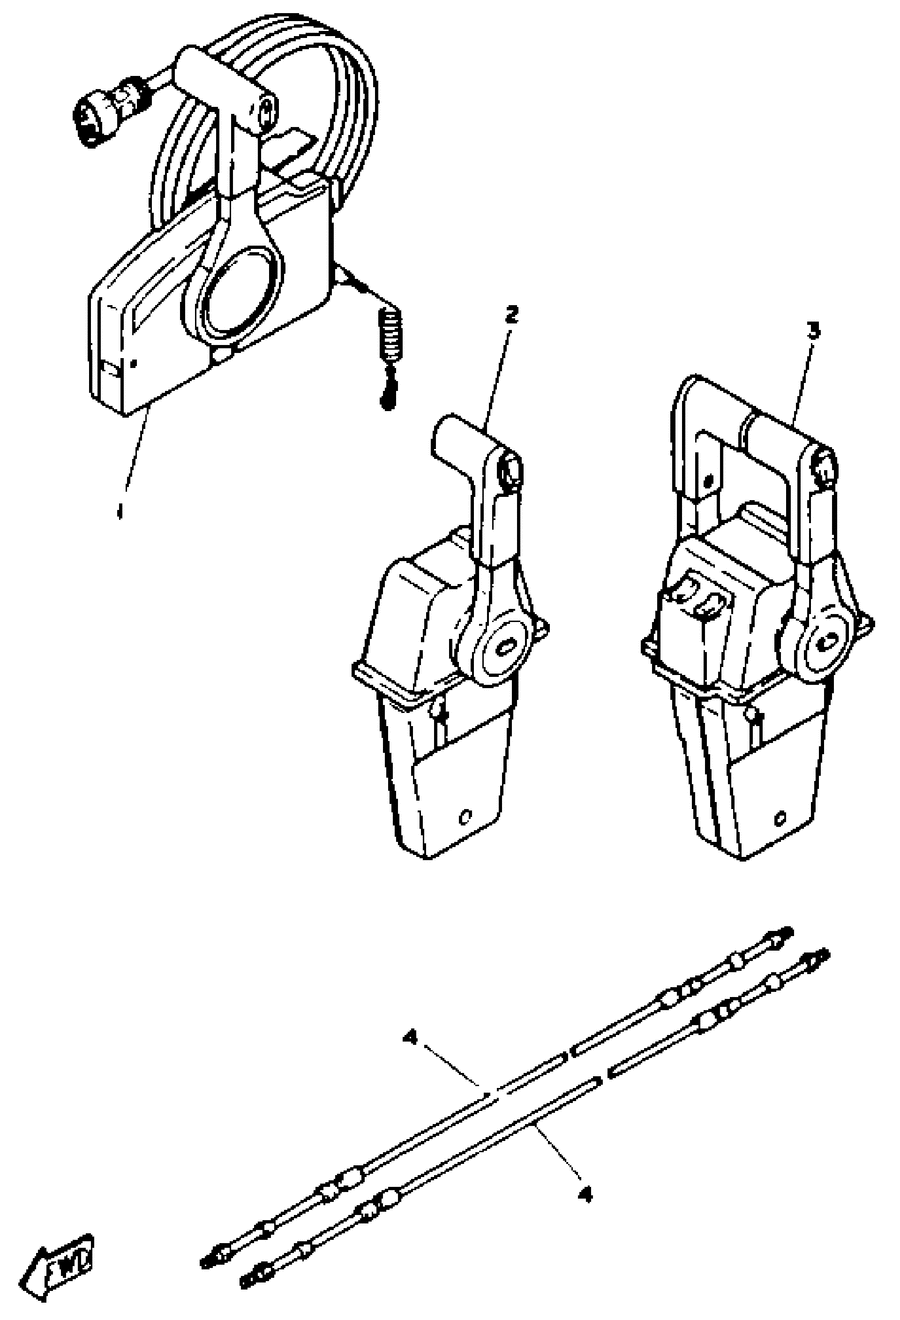 1993 225TXRR REMOTE CONTROL CABLES